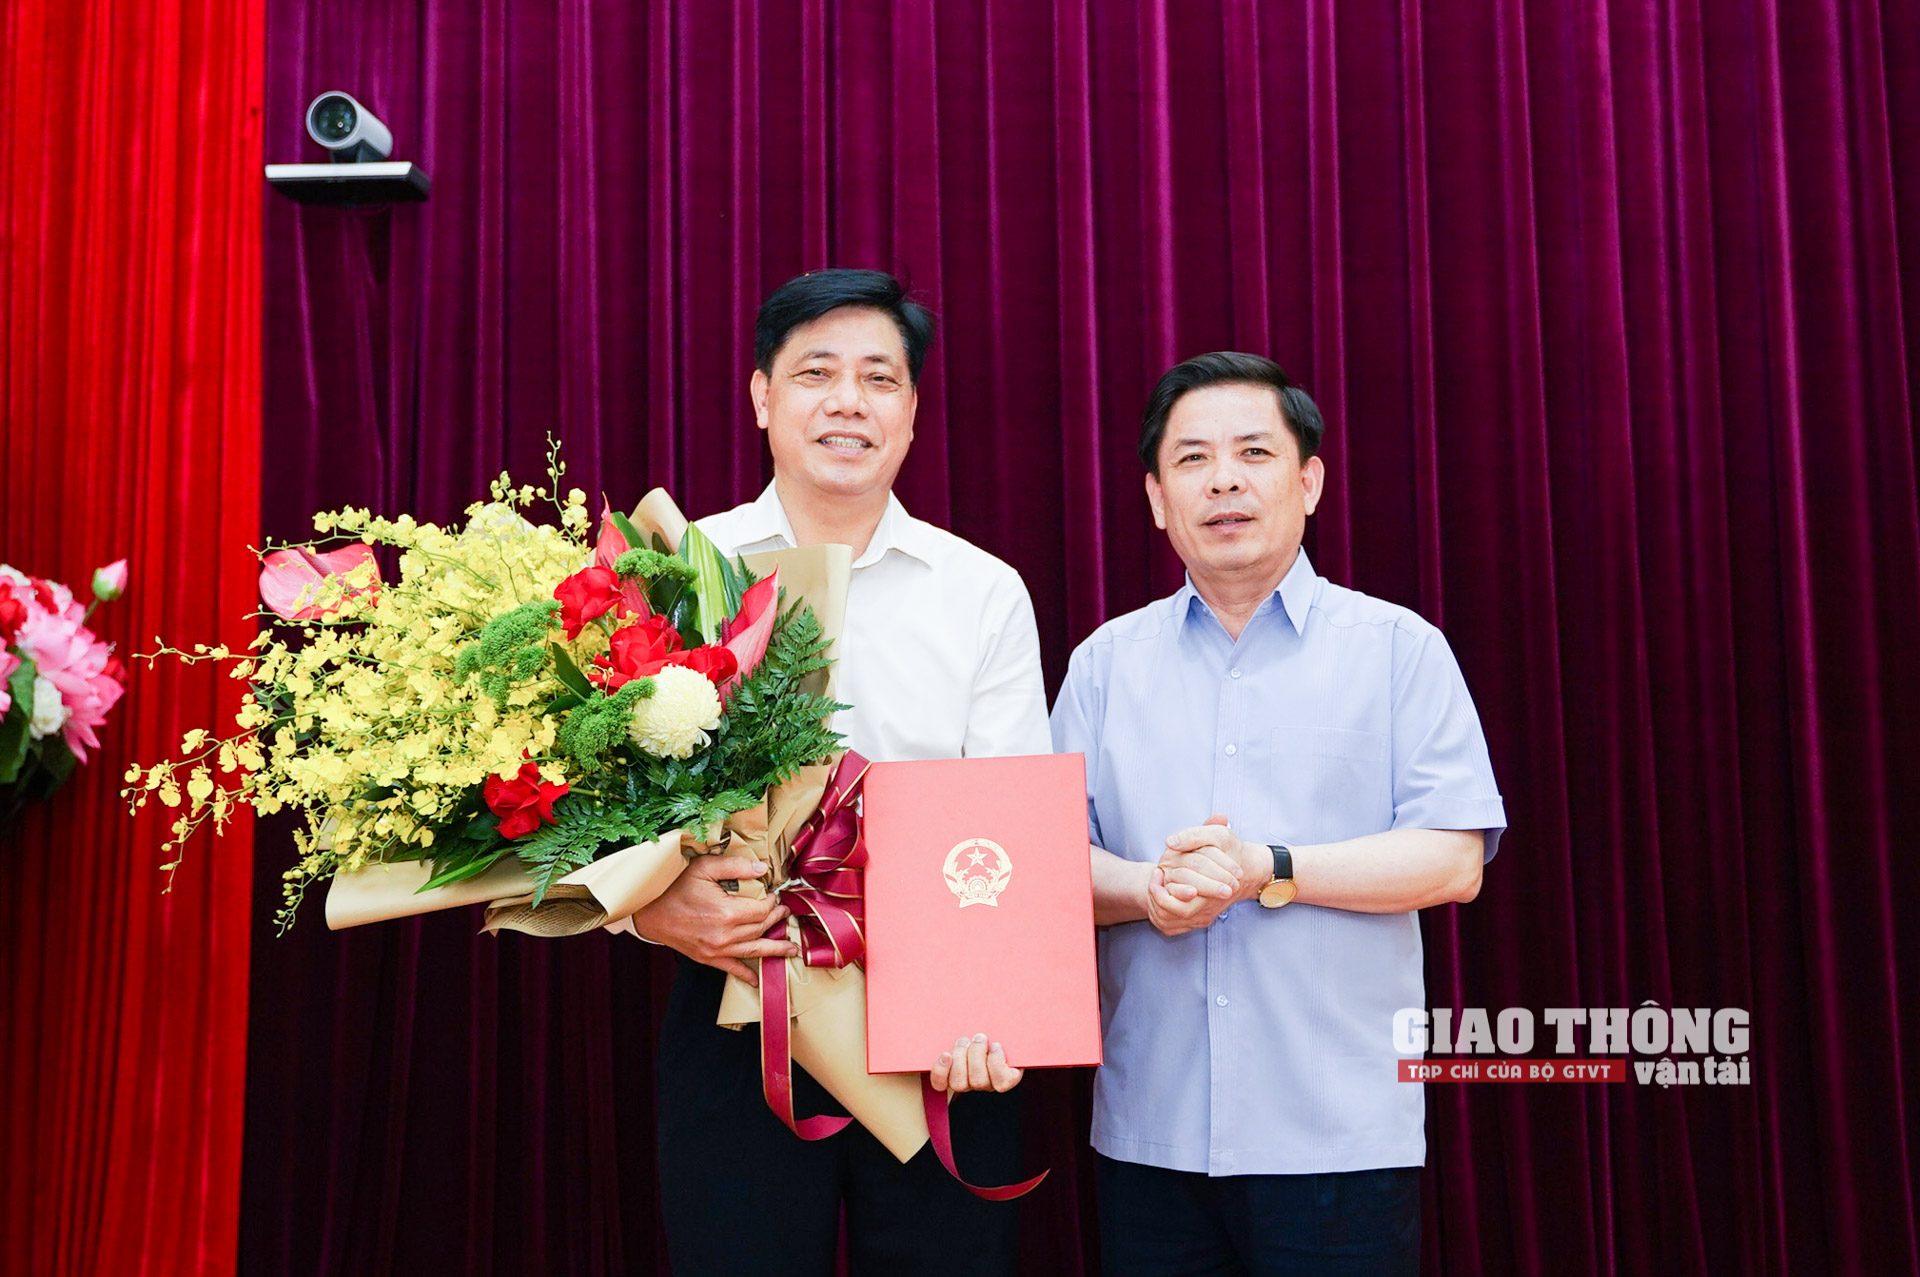 Thừa ủy quyền của Thủ tướng Chính phủ, Bộ trưởng Bộ GTVT Nguyễn Văn Thể đã trao quyết định nghỉ hưu cho Thứ trưởng Nguyễn Ngọc Đông.